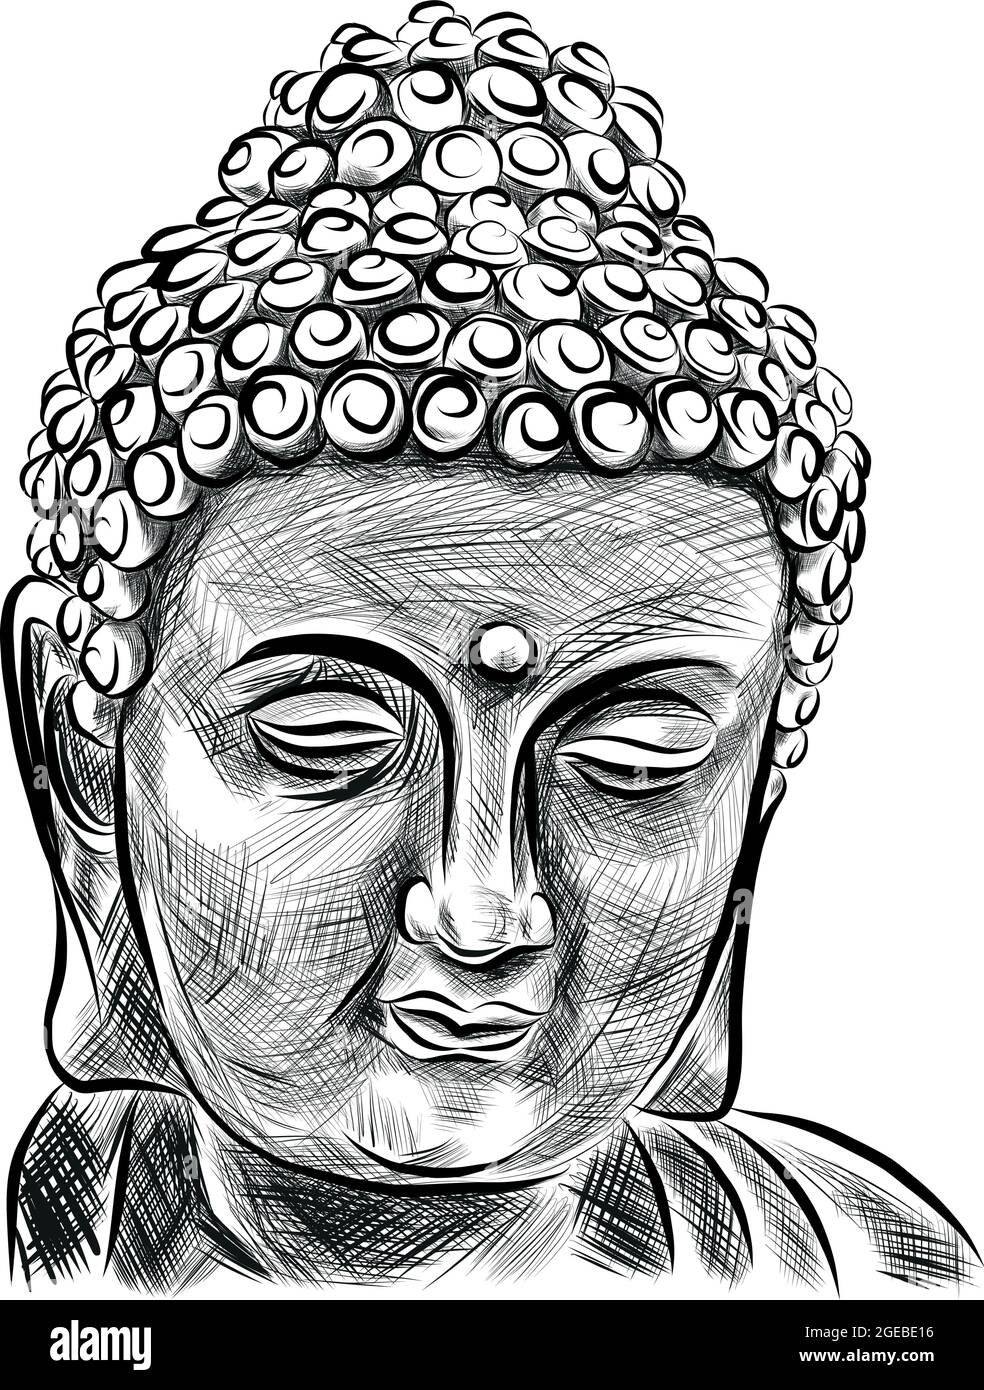 Sagoma della testa del Buddha, vettore di disegno a mano, illustrazione in bianco e nero Illustrazione Vettoriale